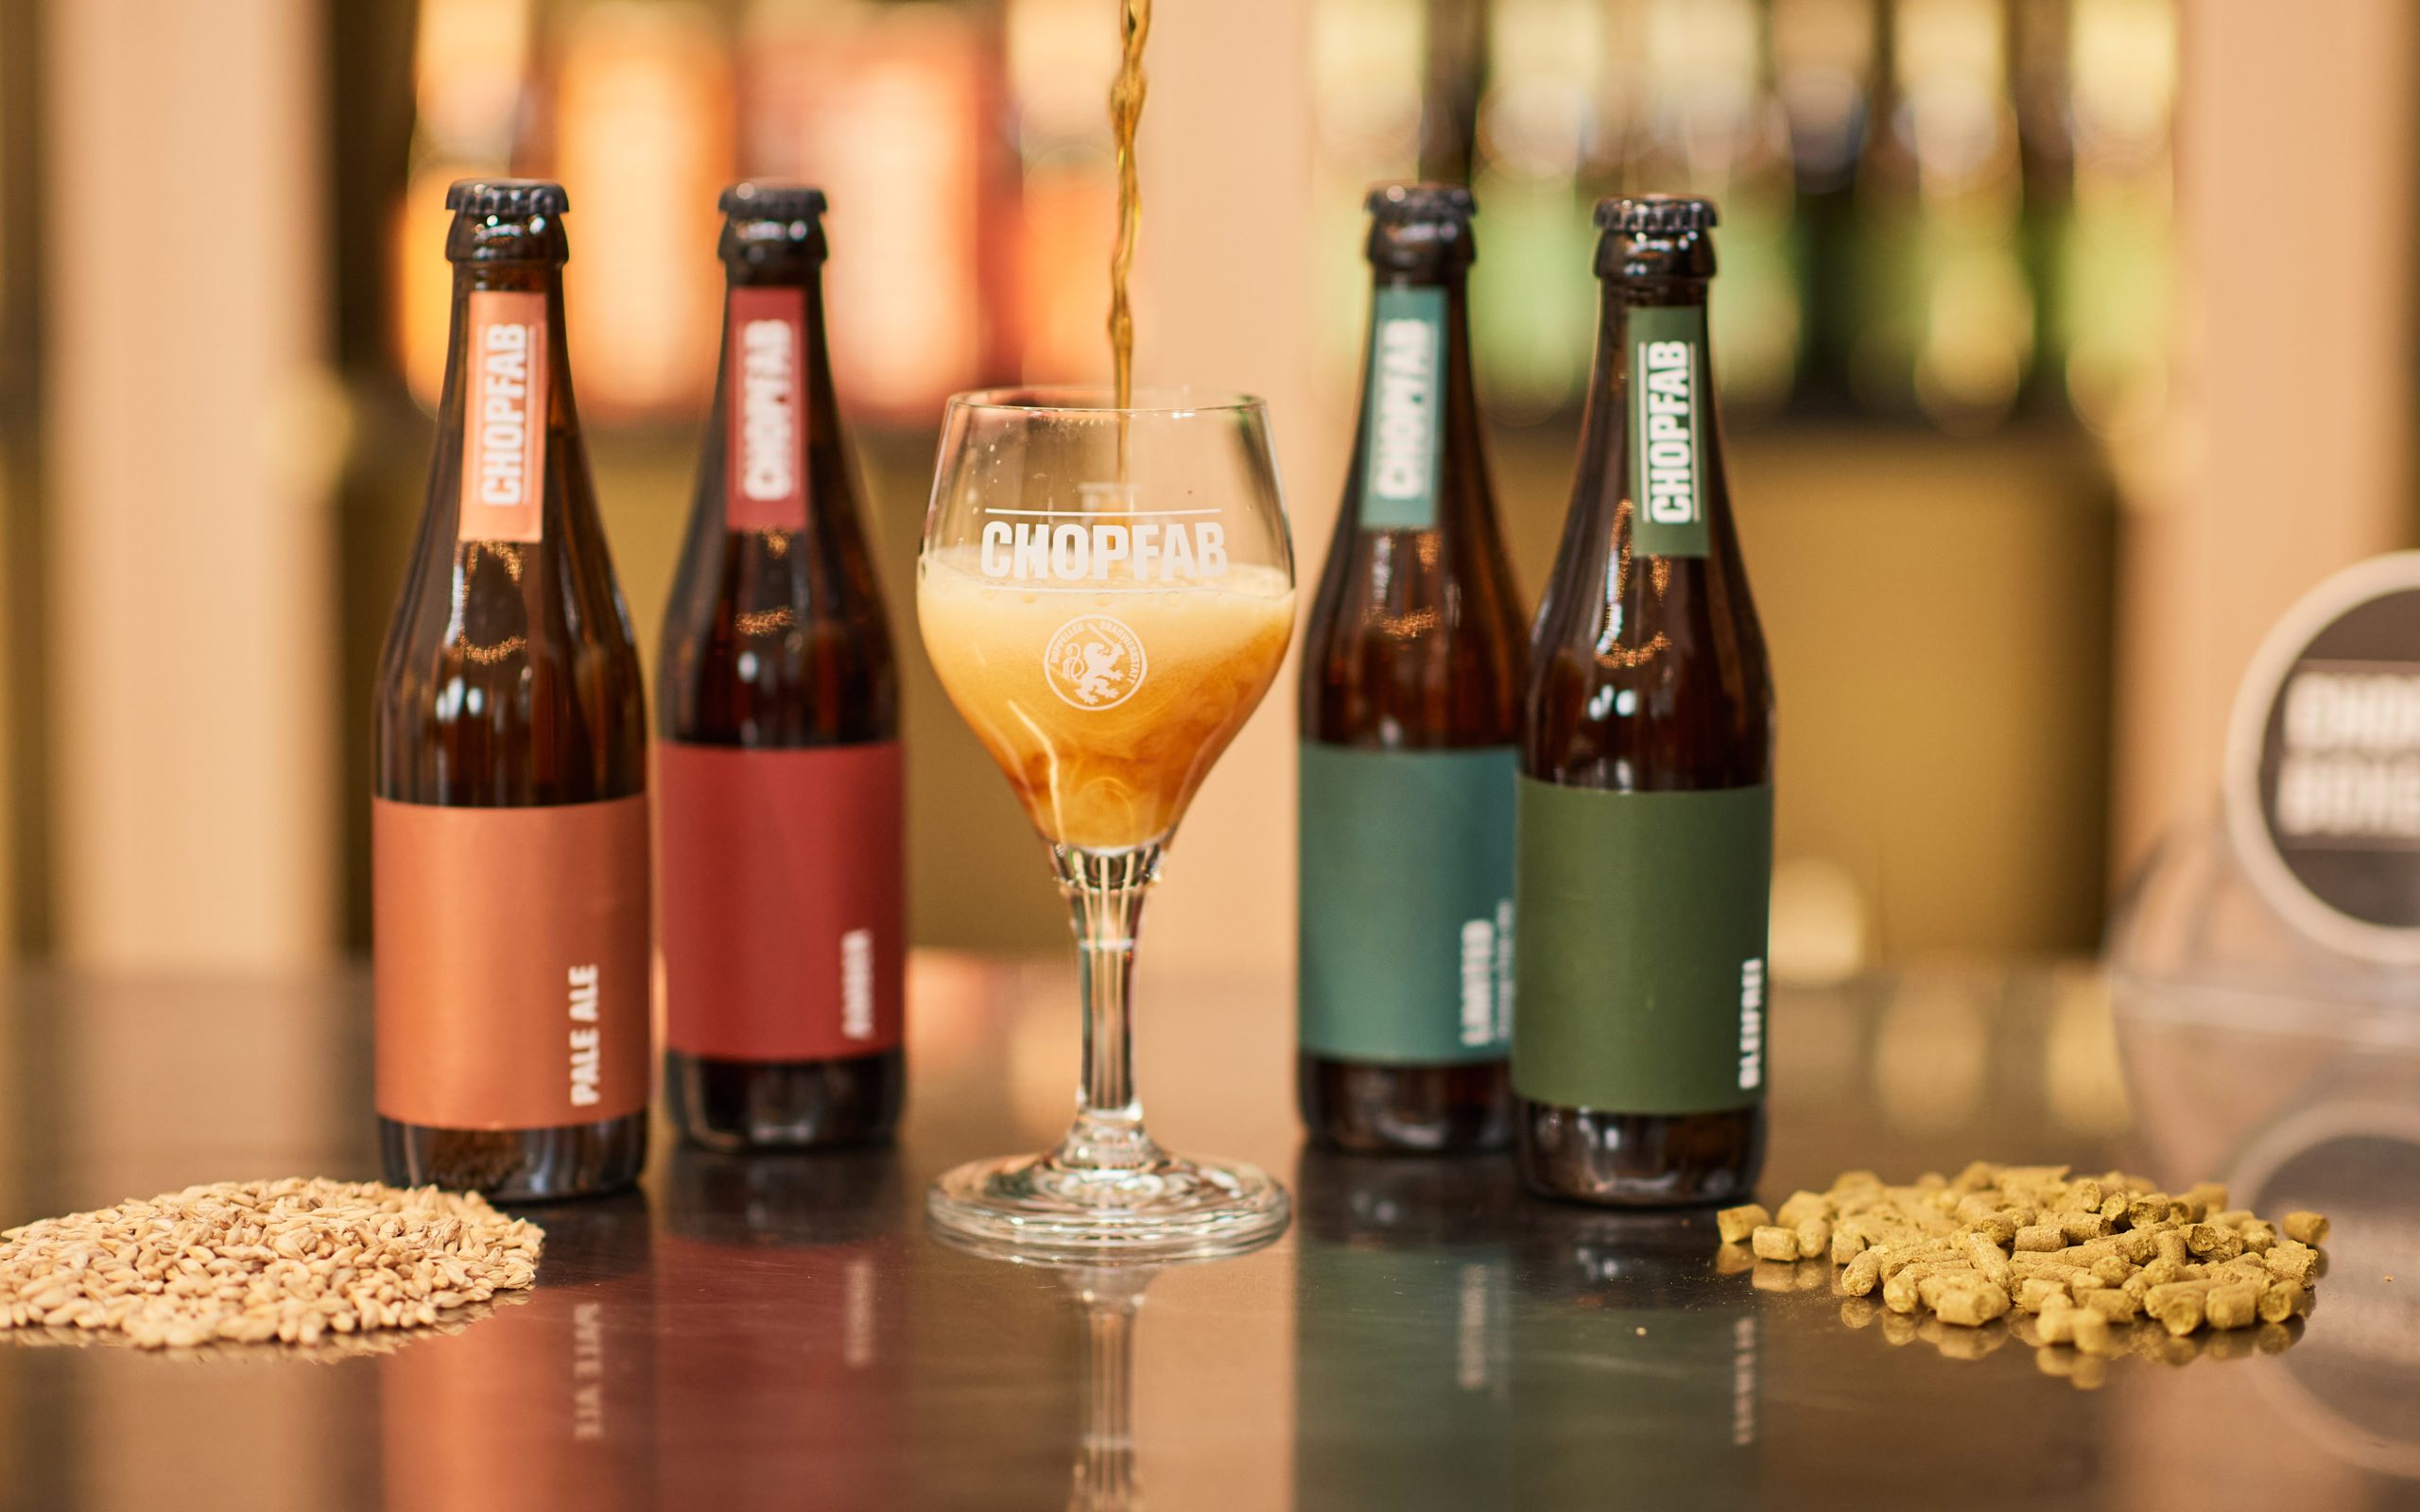 Diese vier Chopfab Biere – das Amber, das Orange Pale Ale, das Pale Ale sowie das alkoholfreie Bleifrei – sind im 6er-Pack à je 33cl in zahlreichen regionalen Coop-Supermärkten erhältlich.